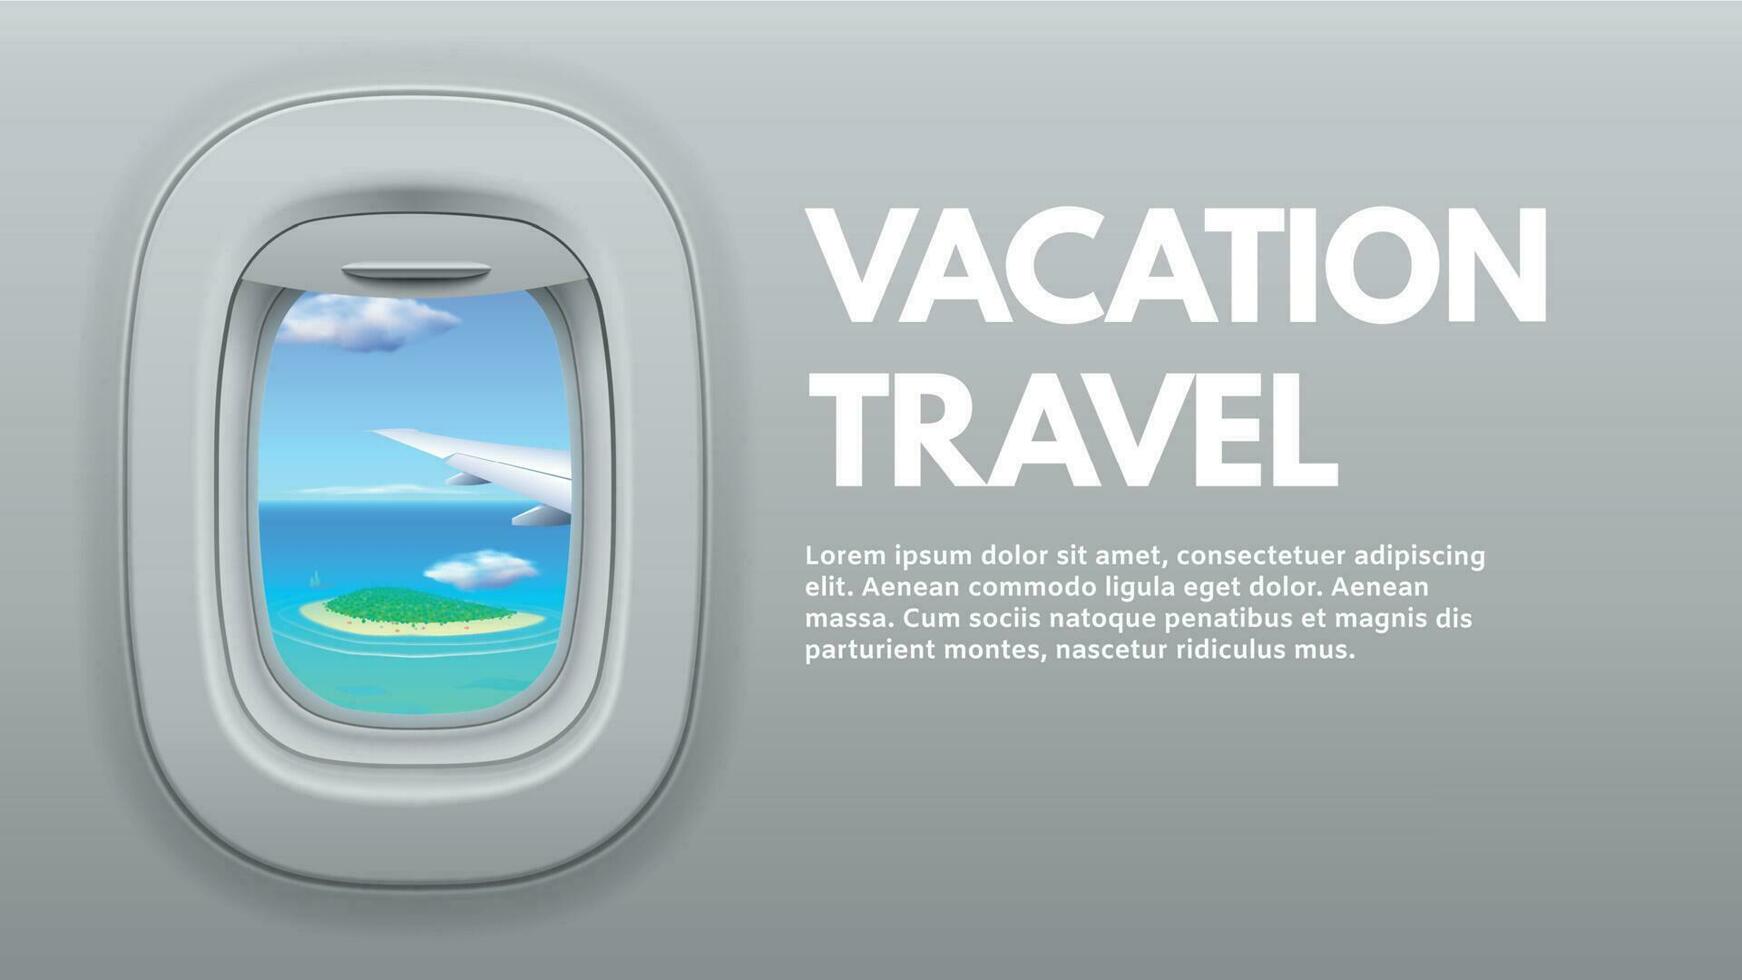 flygplan porthål se. resa flygplan vinge i fönster, resande luft plan och semester reser begrepp vektor illustration